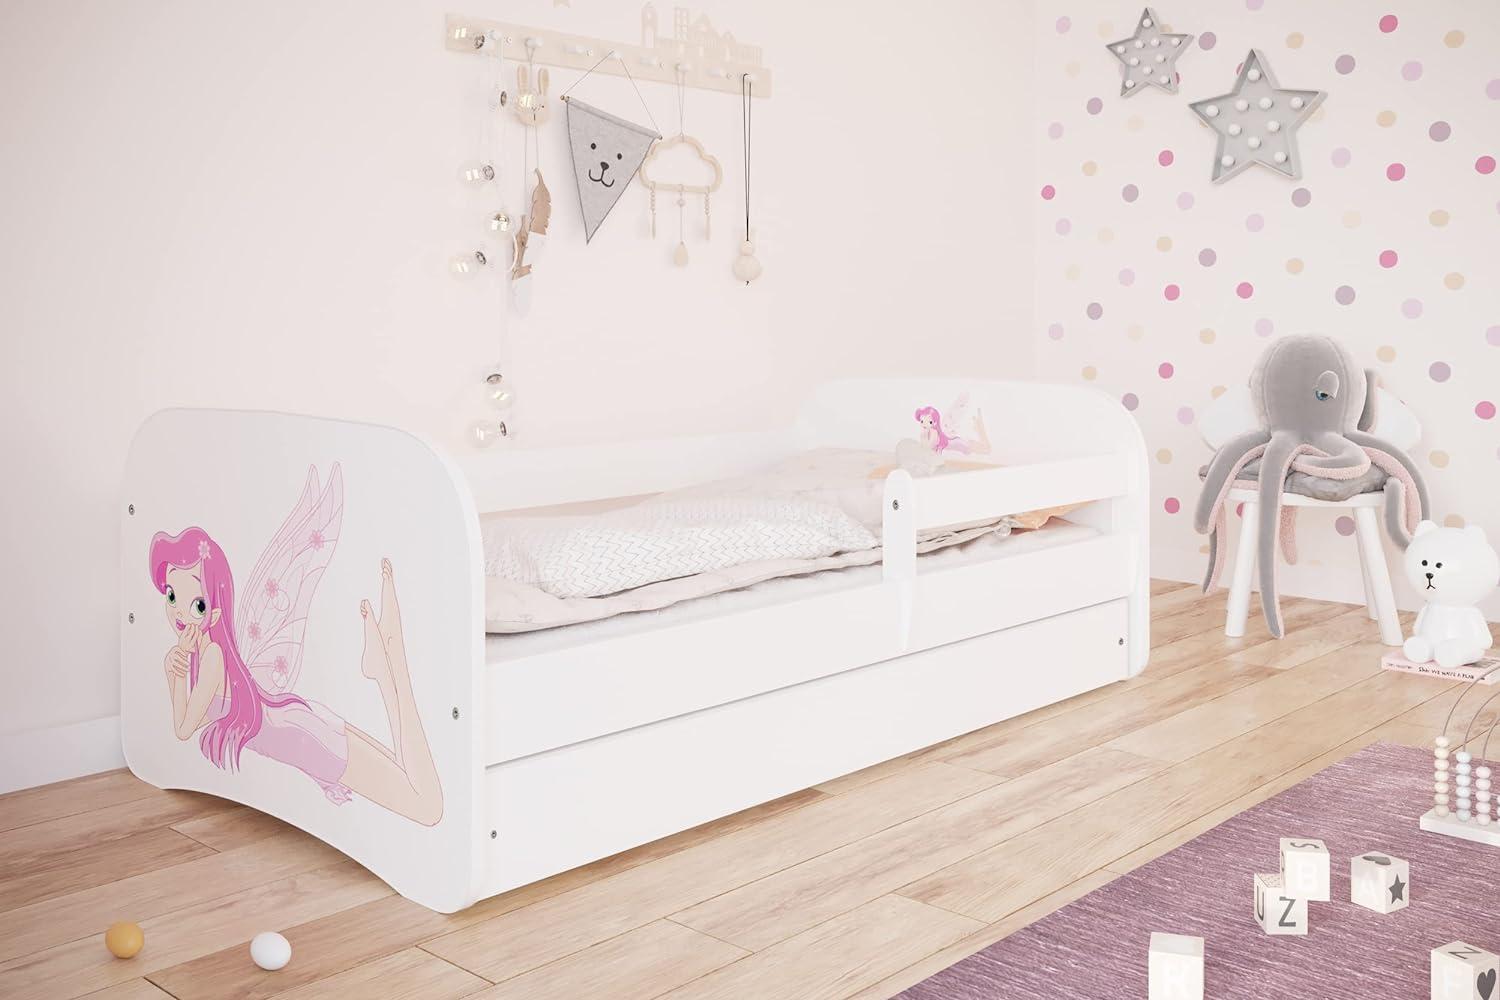 Kocot Kids 'Fee mit Flügeln' Einzelbett weiß 90x180 cm inkl. Rausfallschutz, Matratze, Schublade und Lattenrost Bild 1